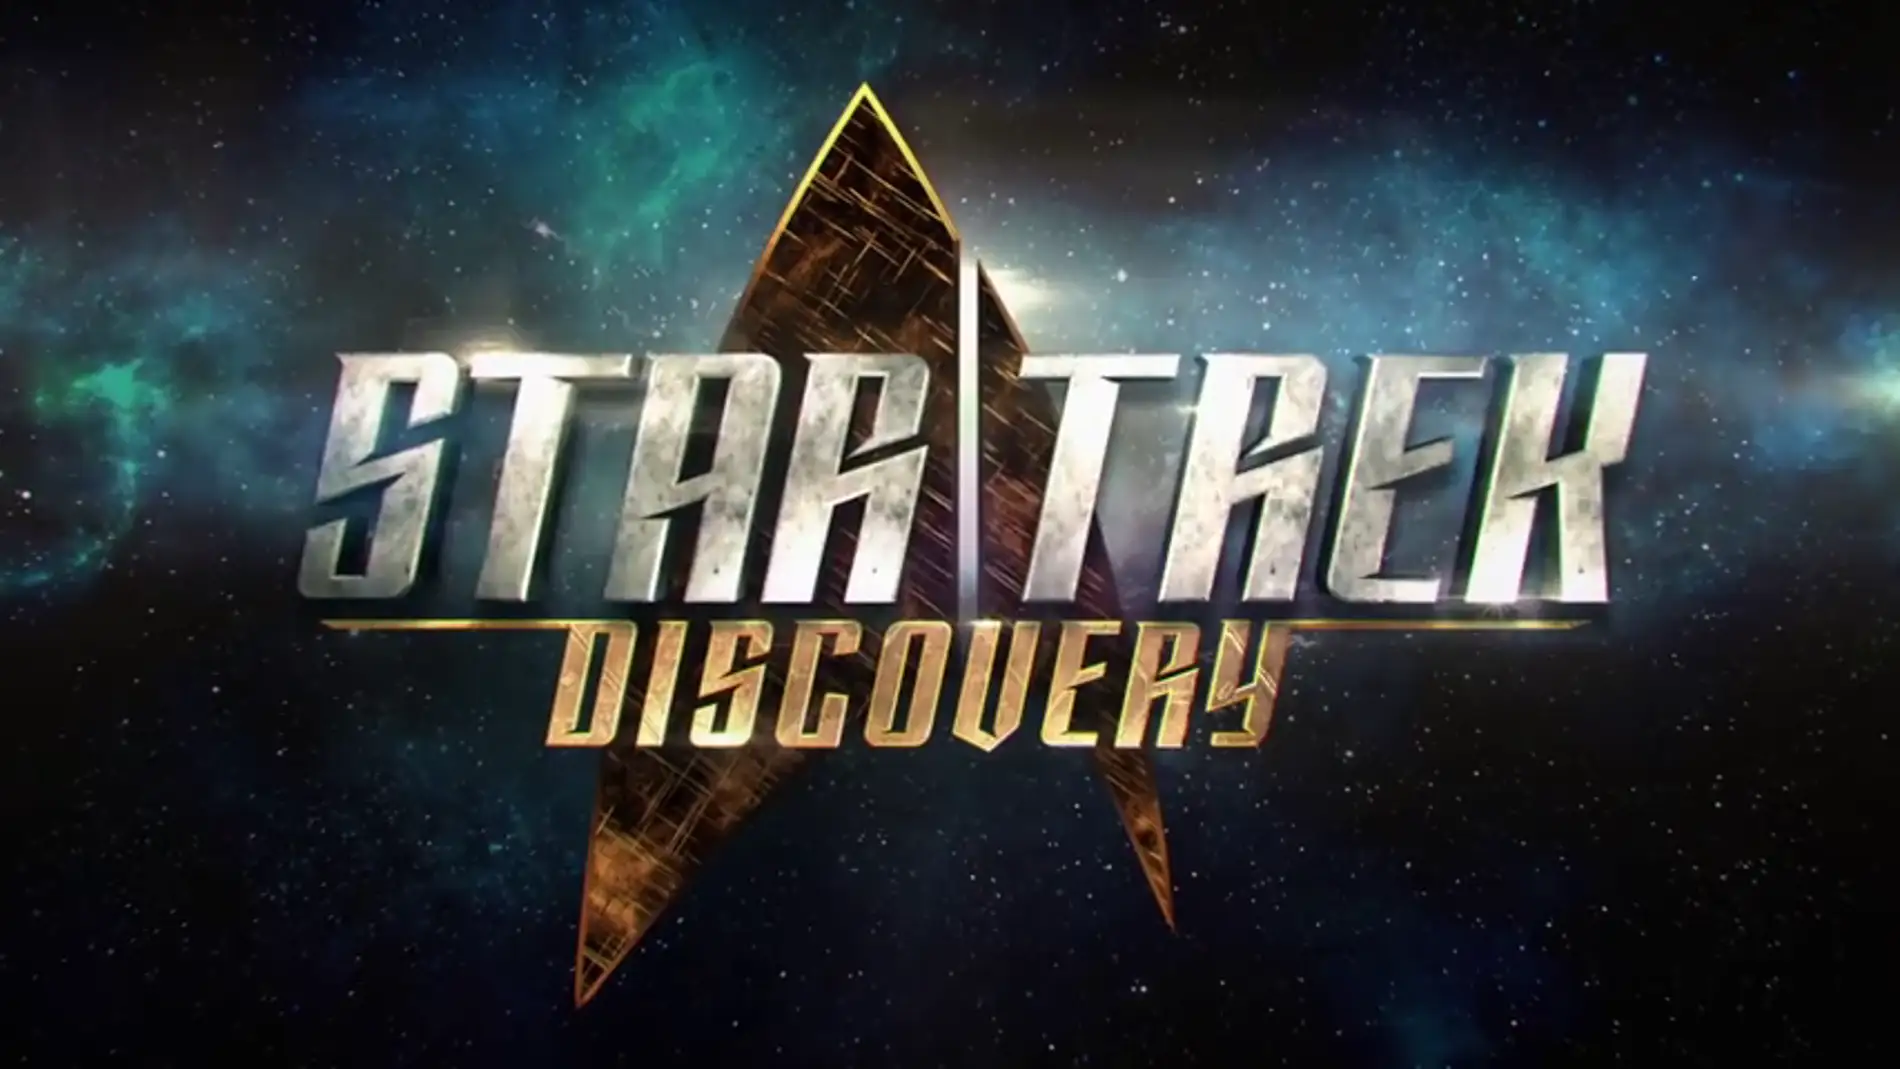 Frame 68.718192 de: 'Star Trek: Discovery' será una precuela de la serie original 